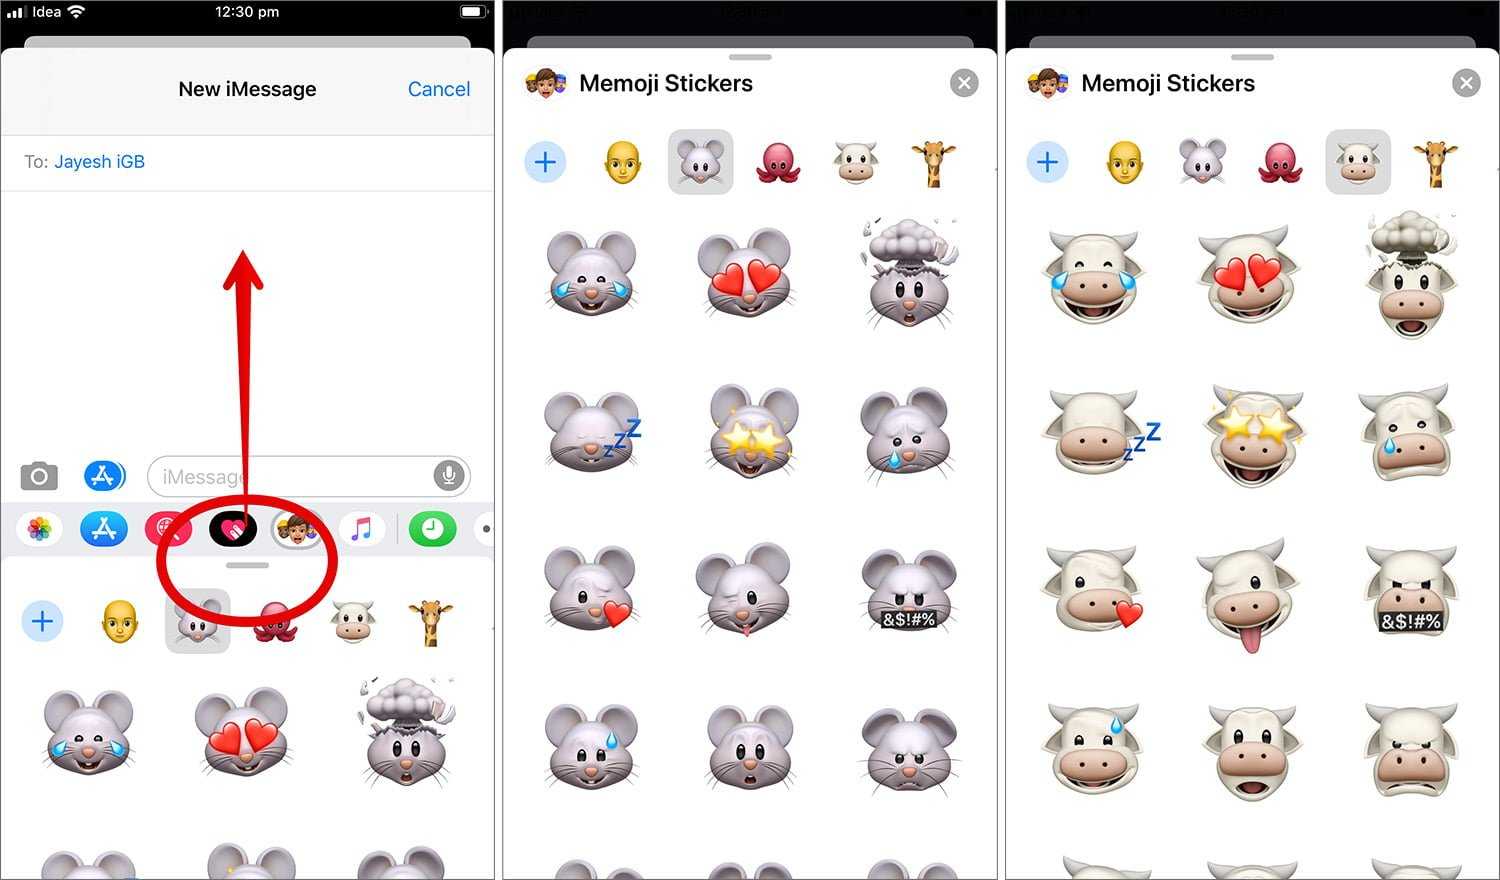 В последних версиях iOS встроена функция Memoji – анимированные персонажи для сообщений Они стали очень популярны у пользователей iPhone